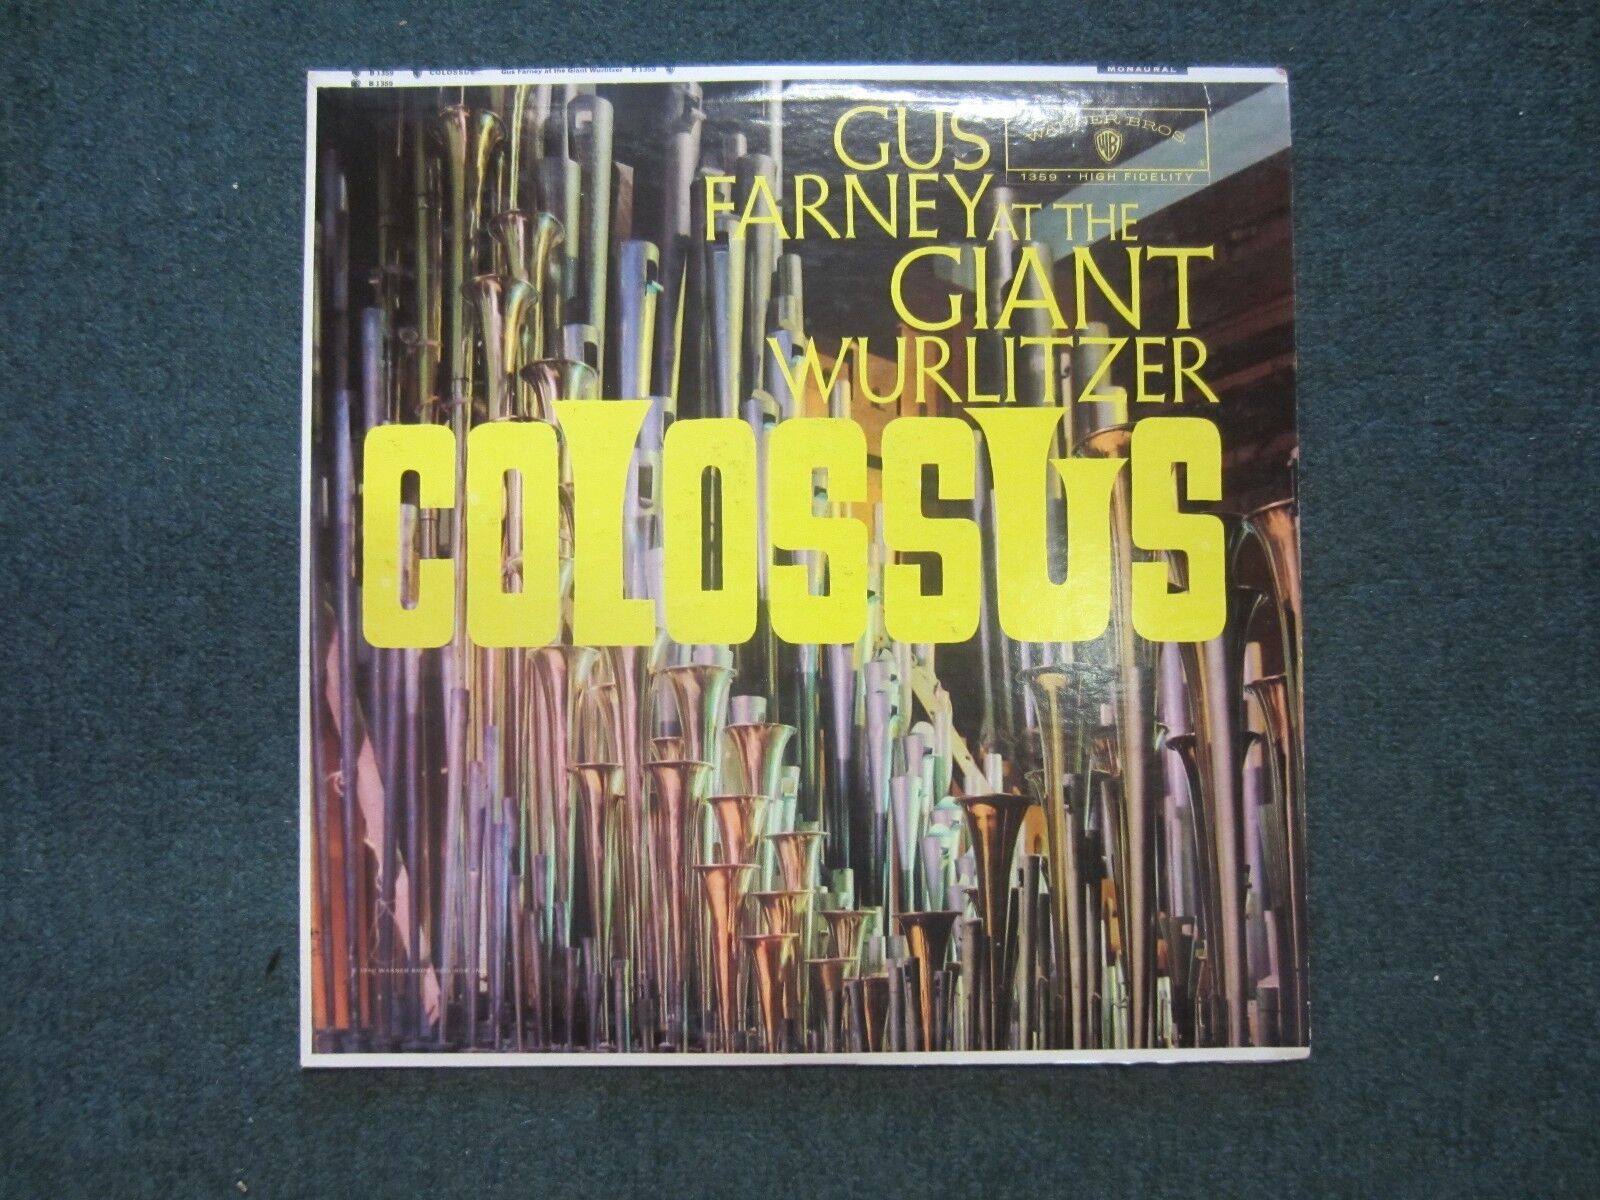 Colossus Gus Farney~RARE WHITE LABEL PROMO Giant Wurlitzer Organ~FAST SHIPPING